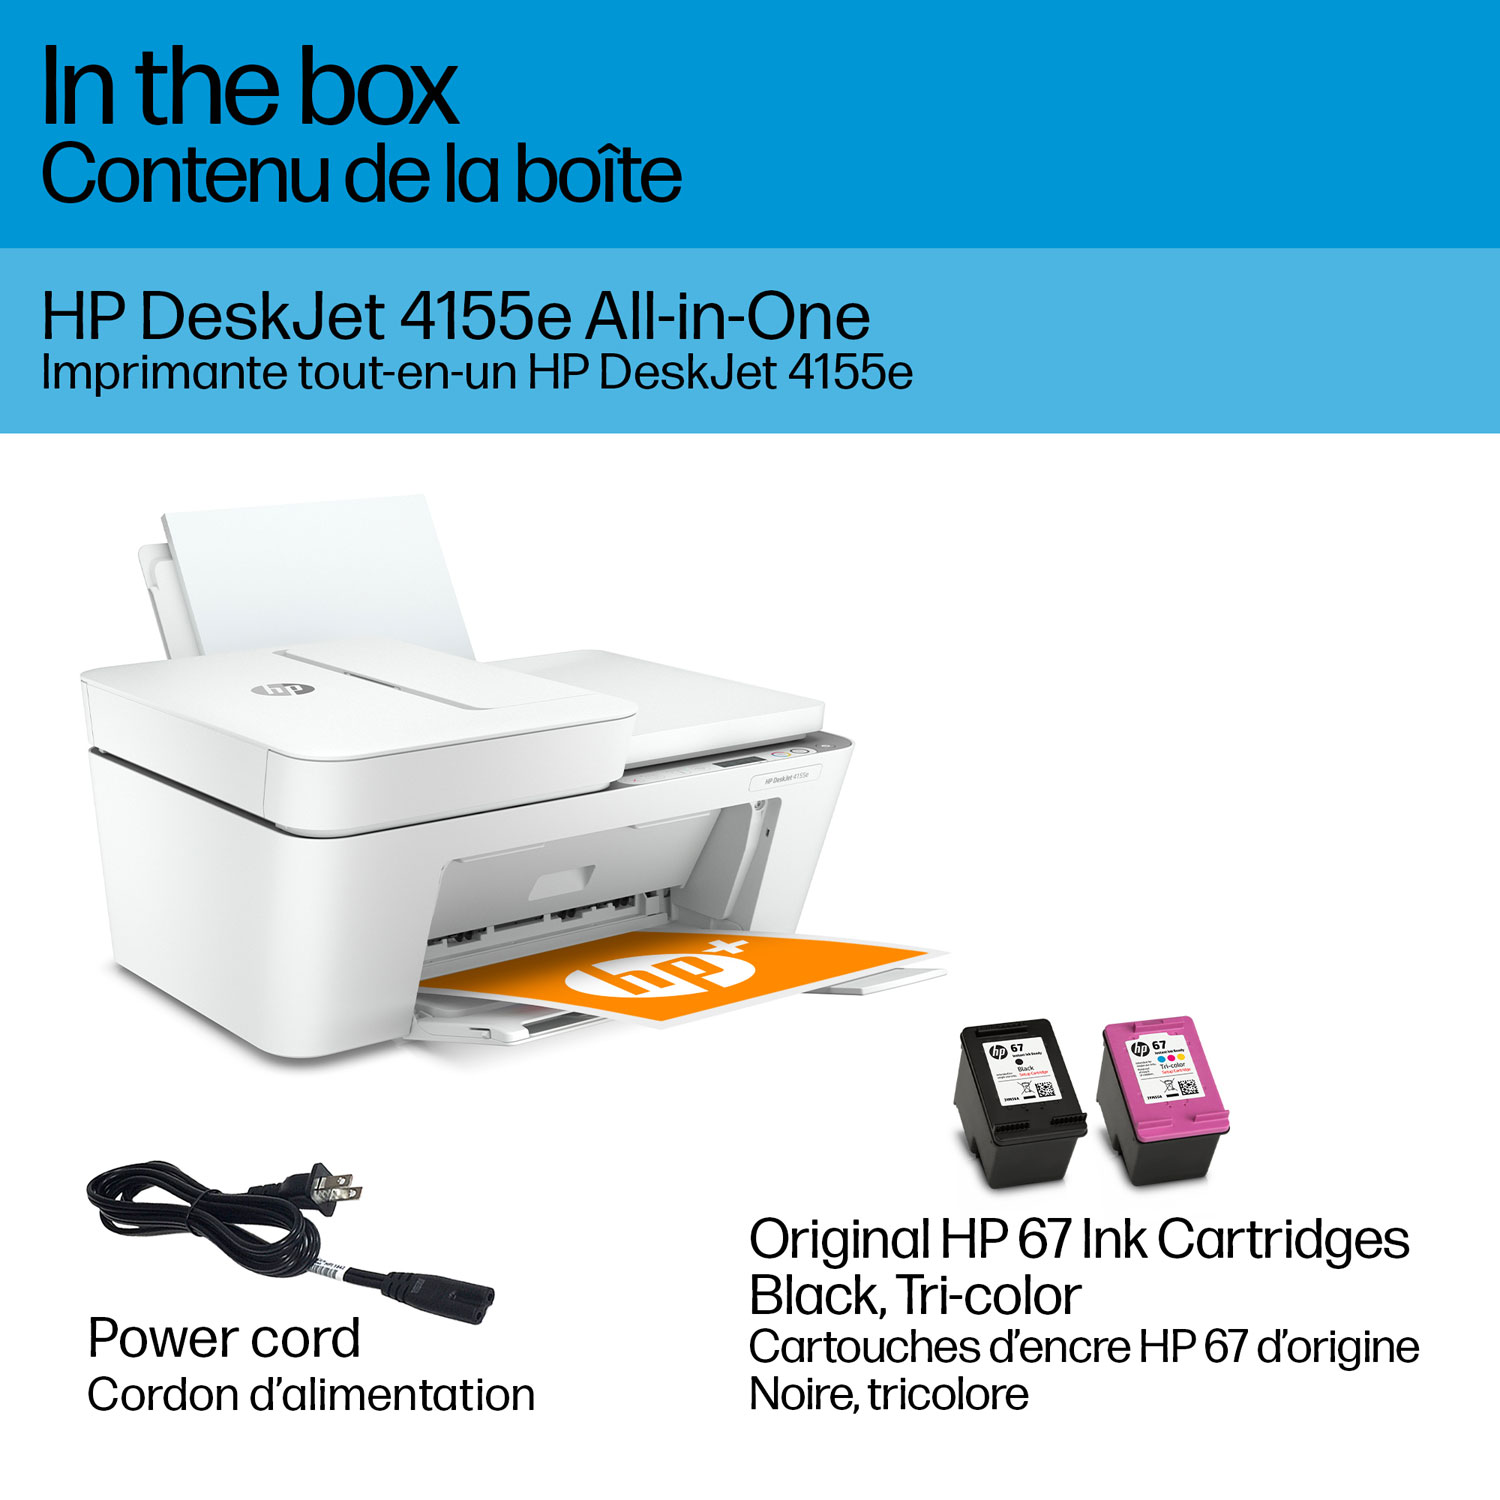 Imprimante tout-en-un HP DeskJet 4155e avec 3 mois d'instant Ink